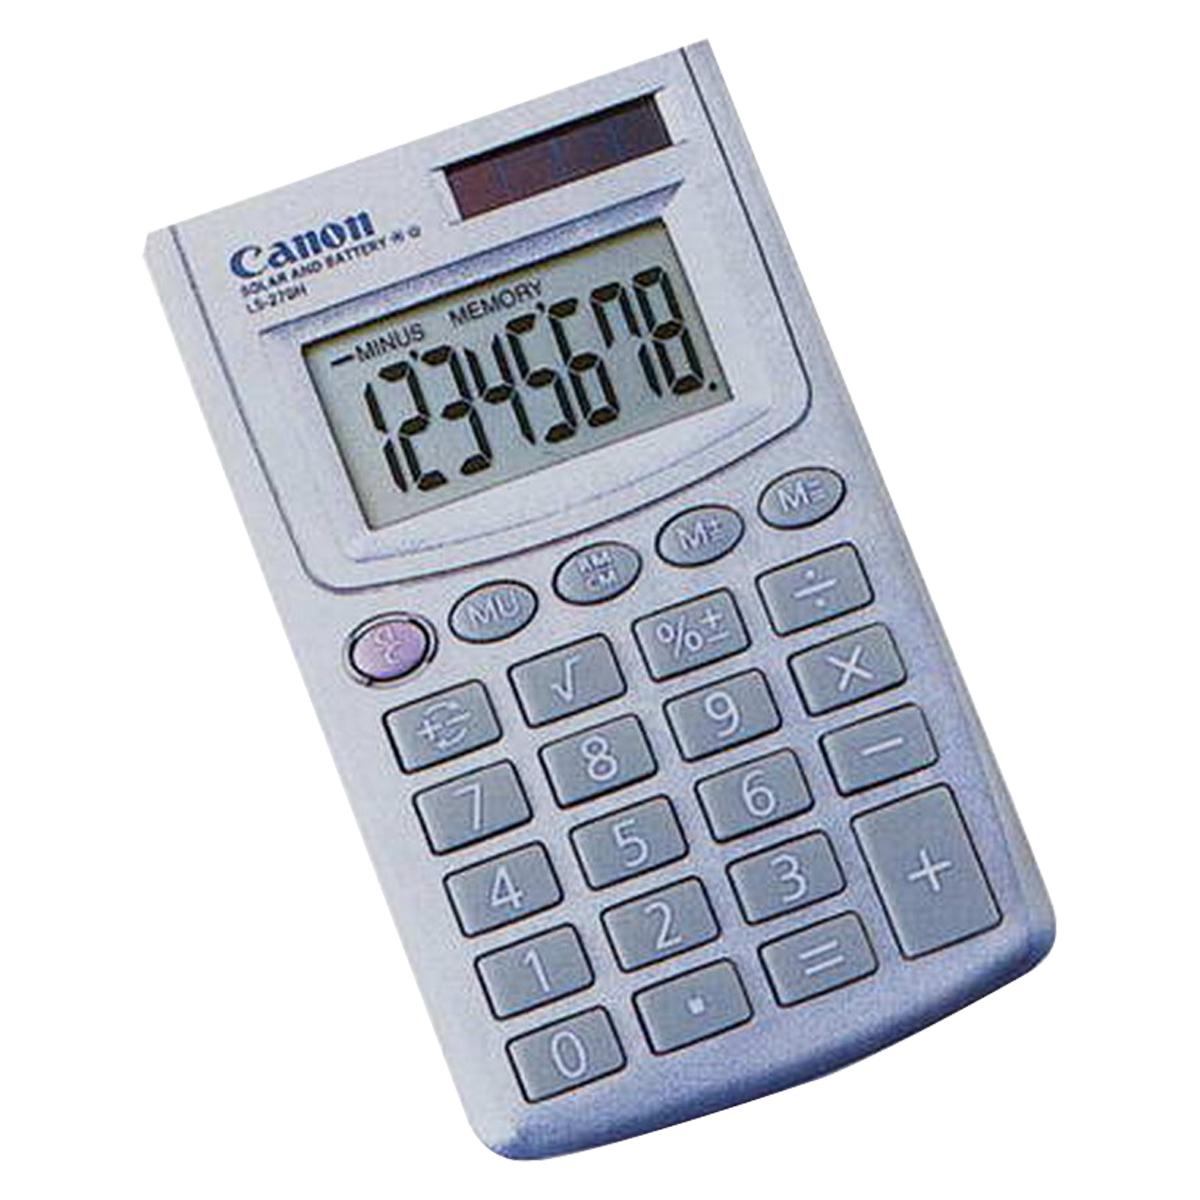 Canon Calculator (White) LS-270H